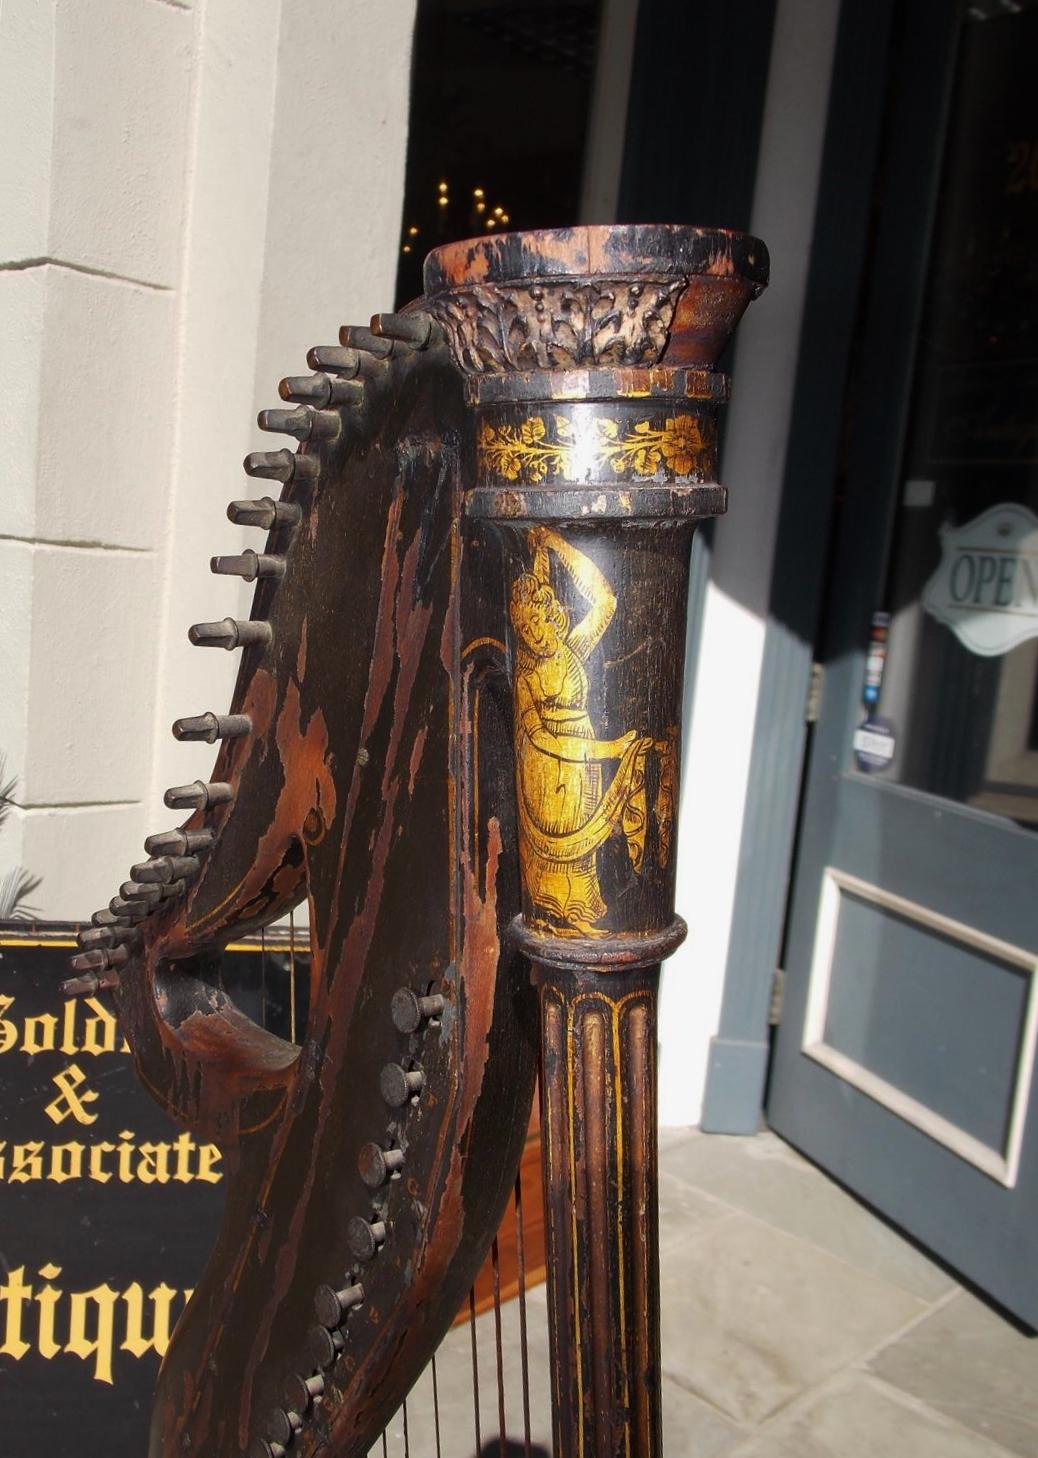 Harpe dital ébonisée de style Régence anglaise, avec figures et fleurs au pochoir doré, signée par le fabricant Edward Light. Vendue chez Srohl Foley place London, Début du 19e siècle.